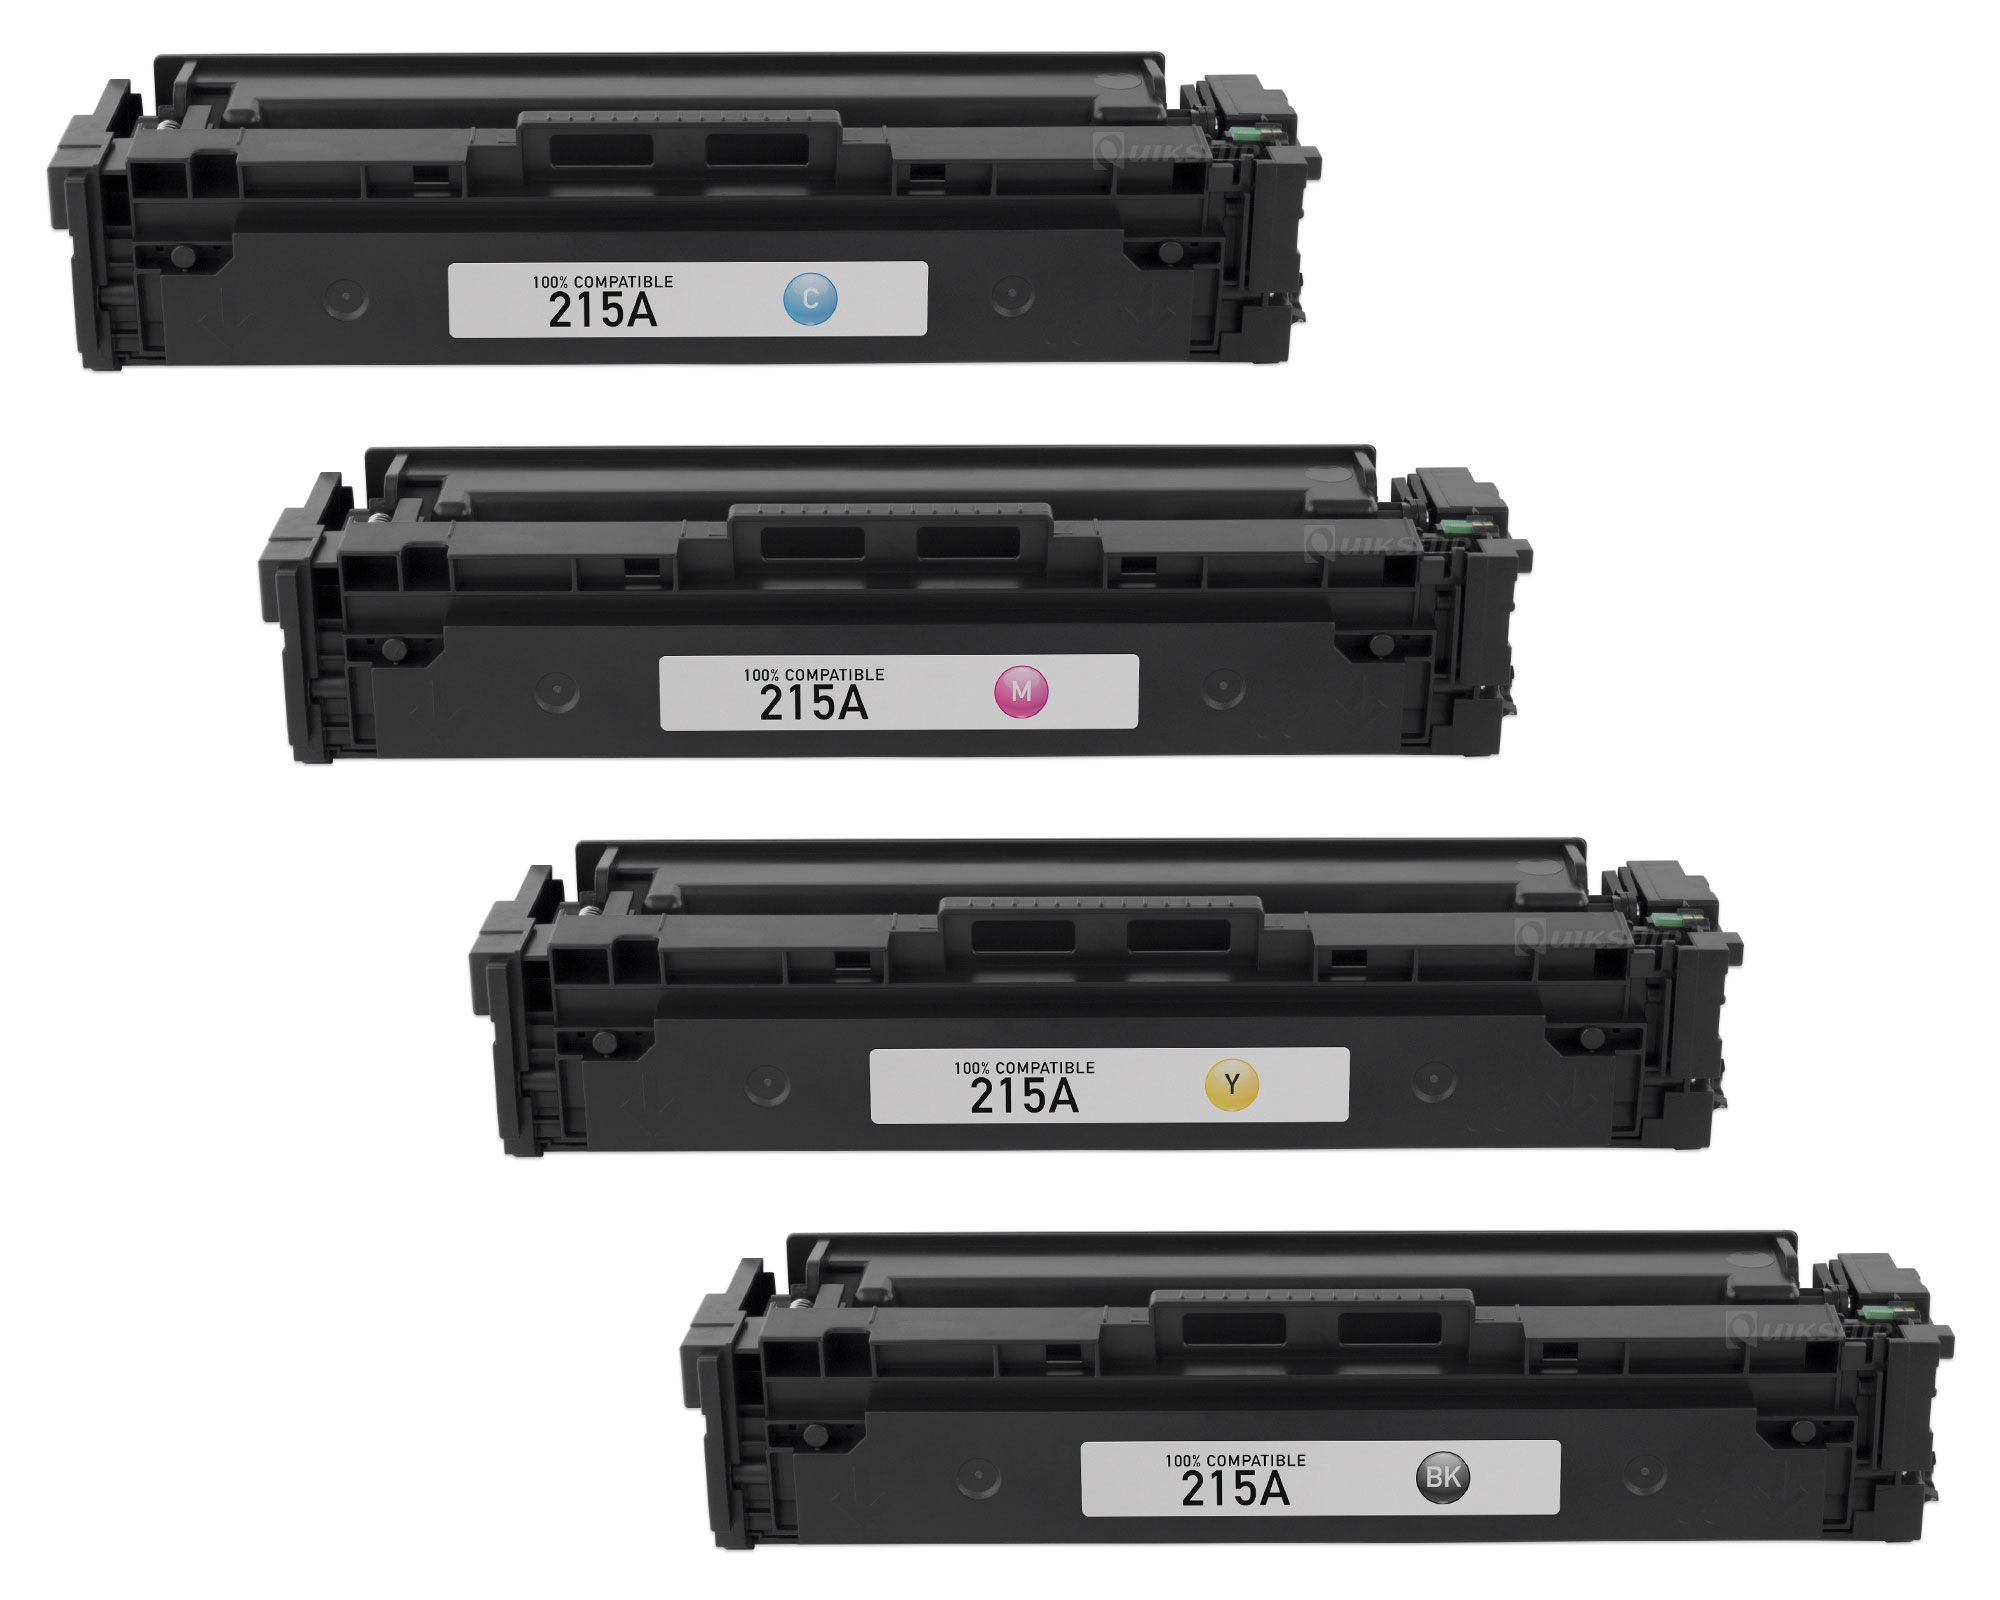 Hp Color Laserjet Pro Mfp M183fw Cheap Deals, Save 49% | jlcatj.gob.mx